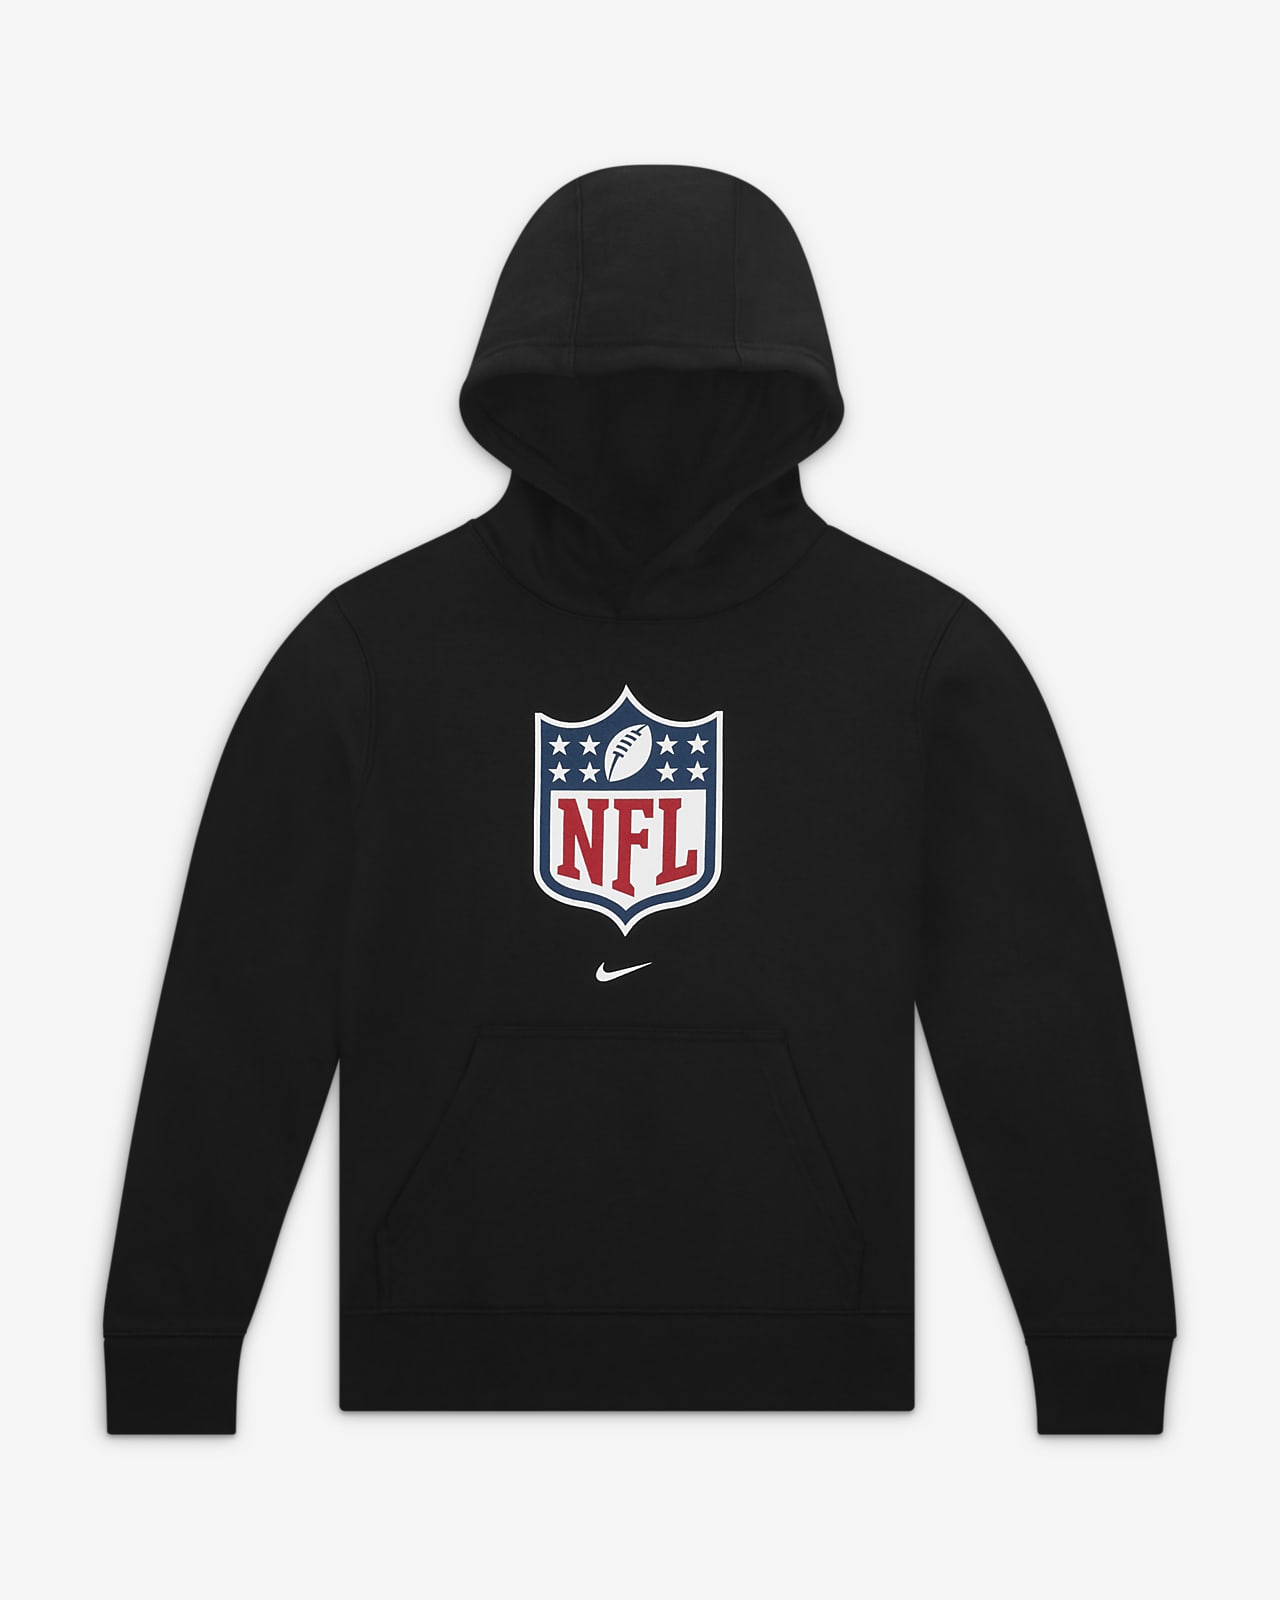 Nike (NFL) Older Kids' Pullover Hoodie